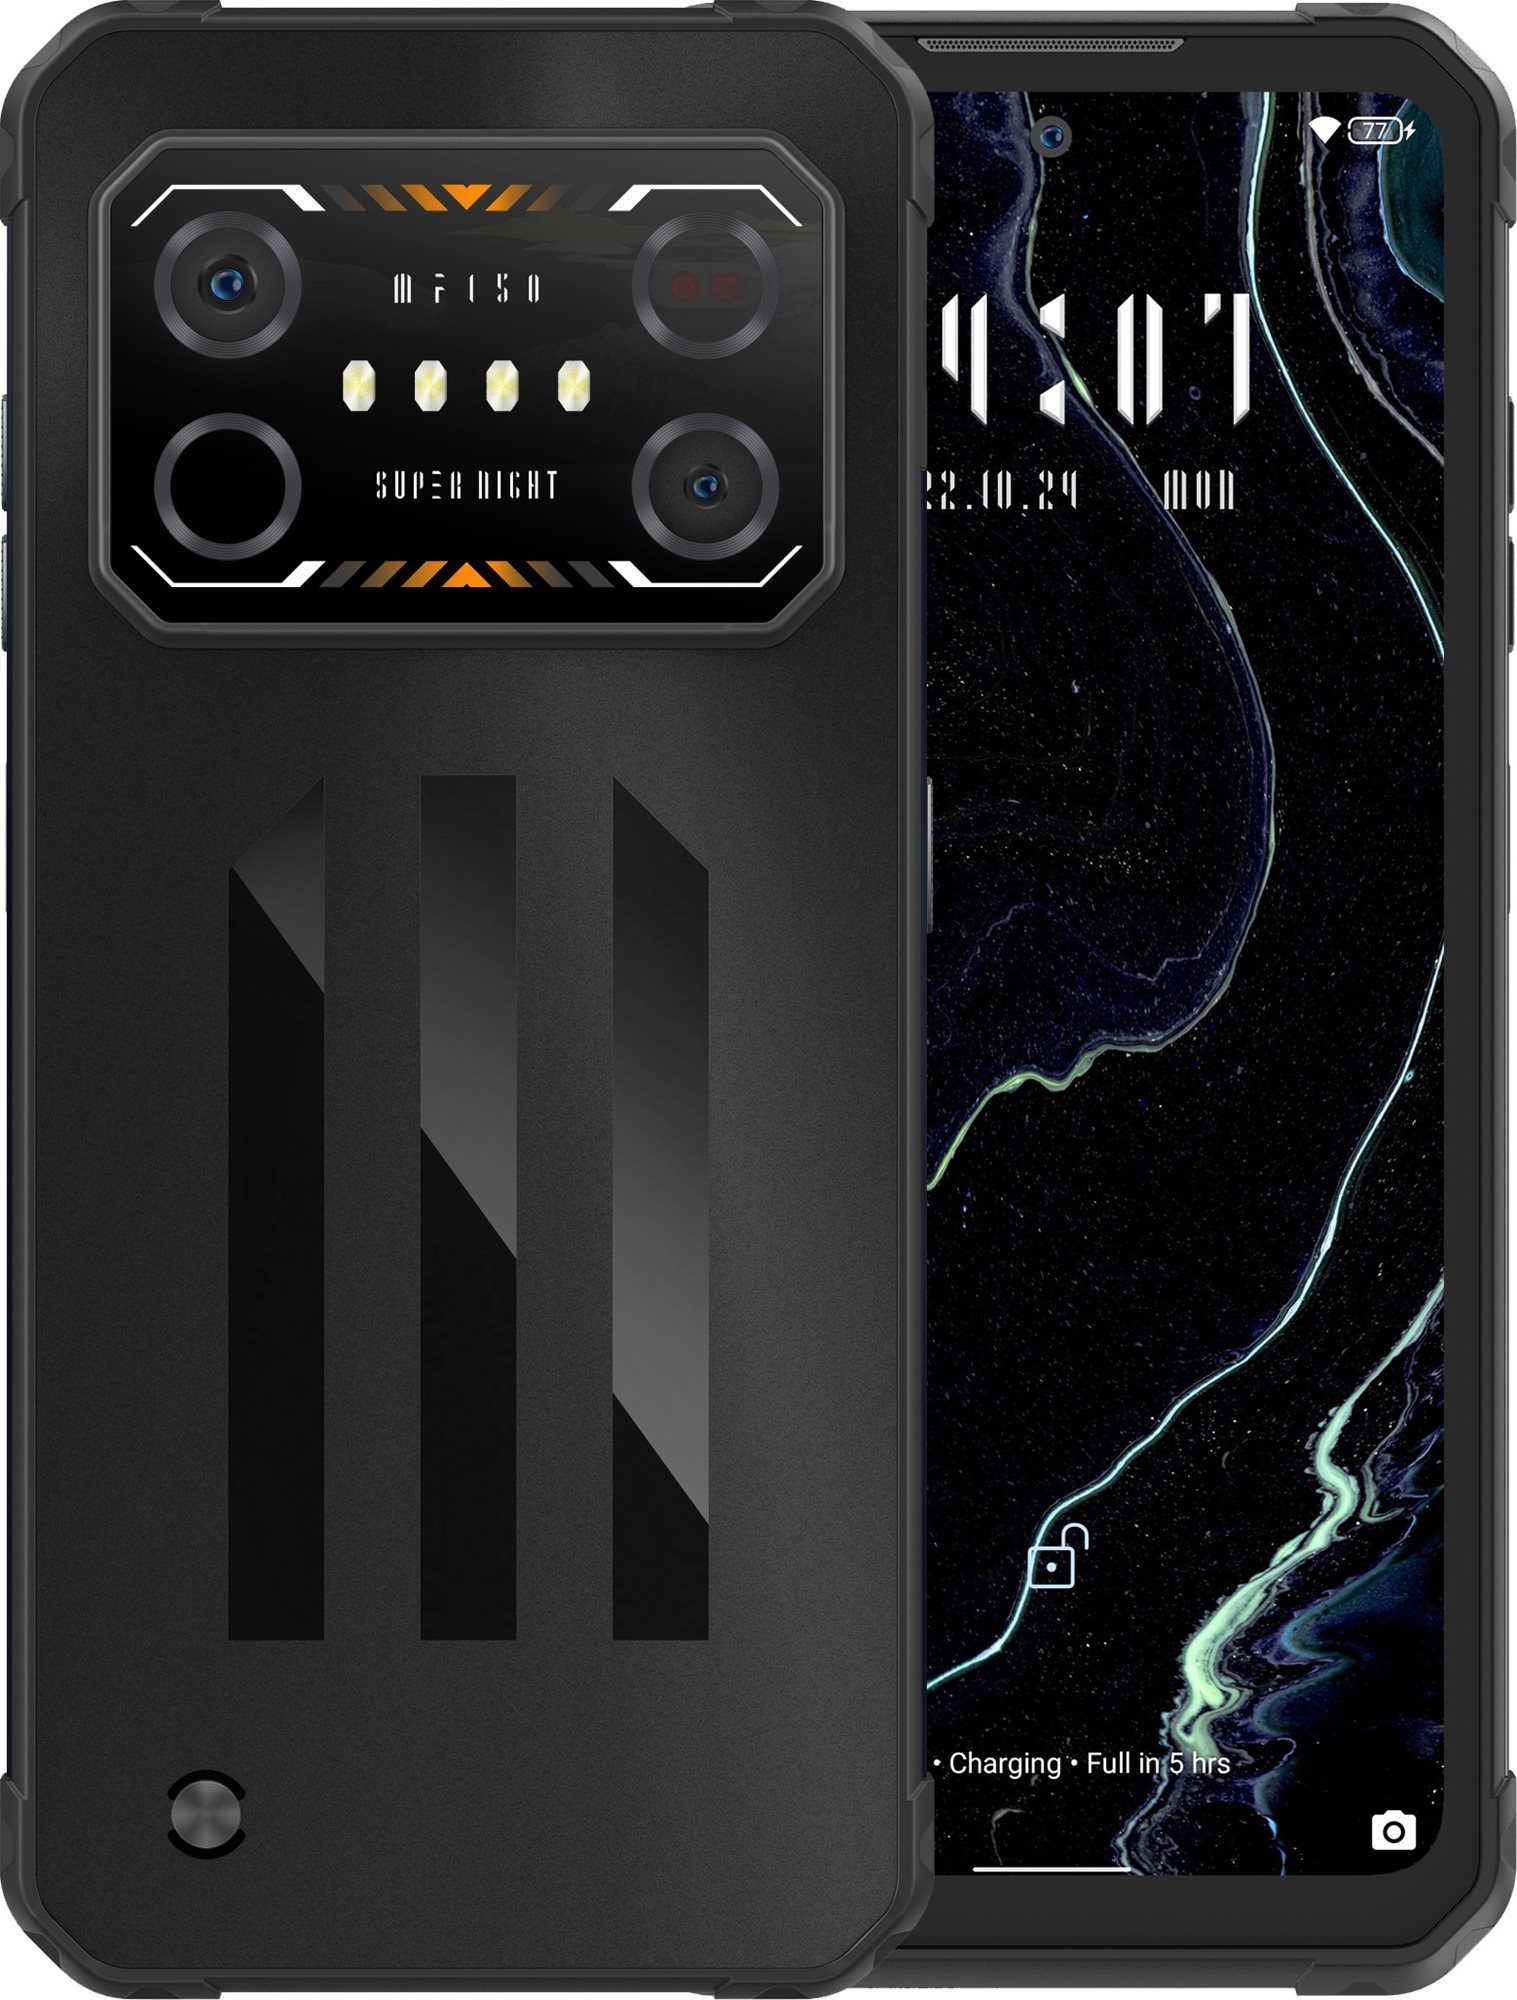 Mobiltelefon IIIF150 Air1 Ultra 8 GB / 128 GB Obsidian Black